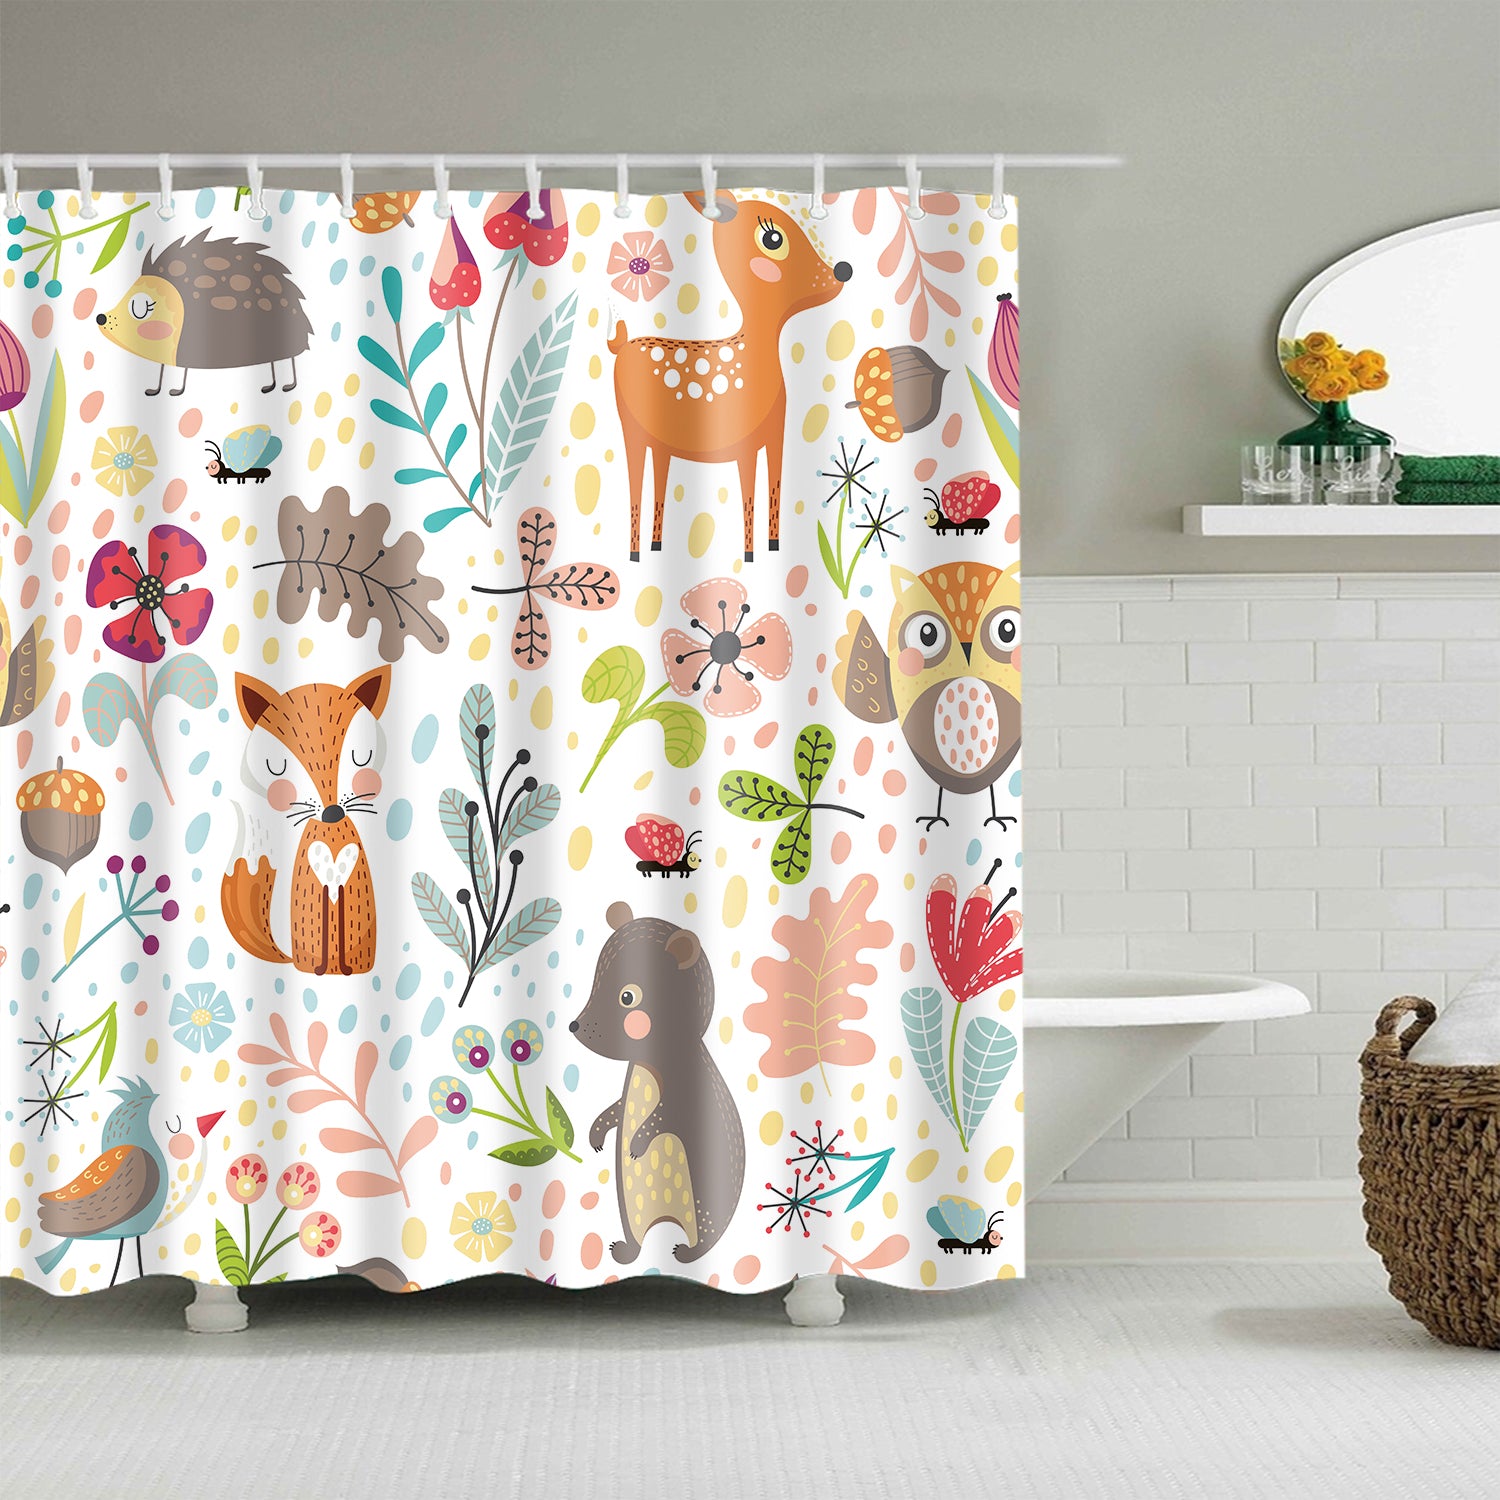 Cartoon Seamless Autumn Forest Animal Fox Deer Shower Curtain